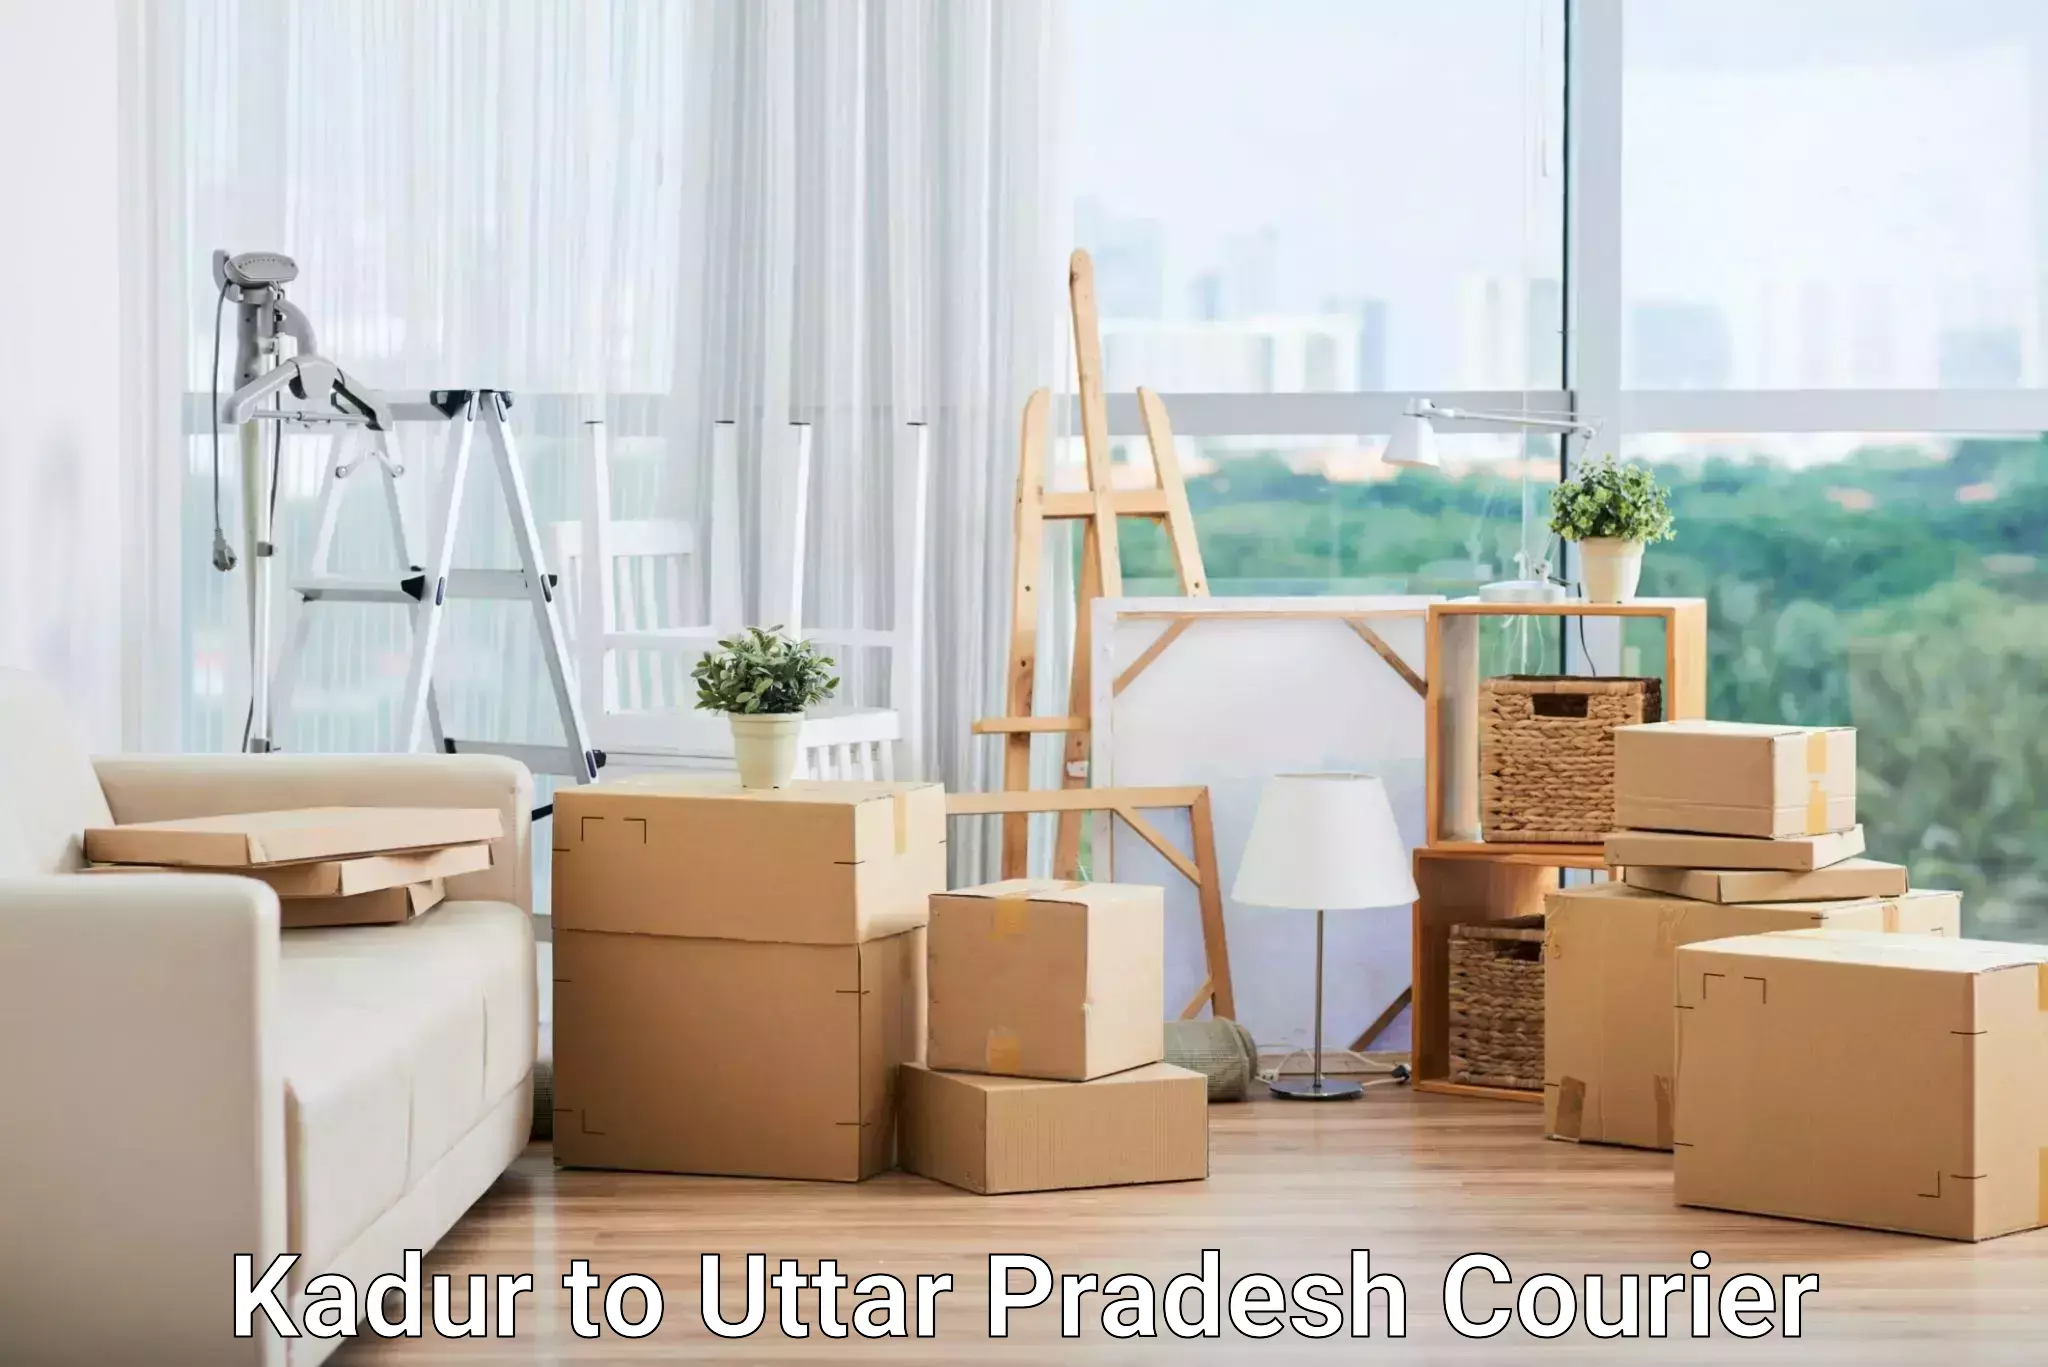 Modern courier technology Kadur to Uttar Pradesh